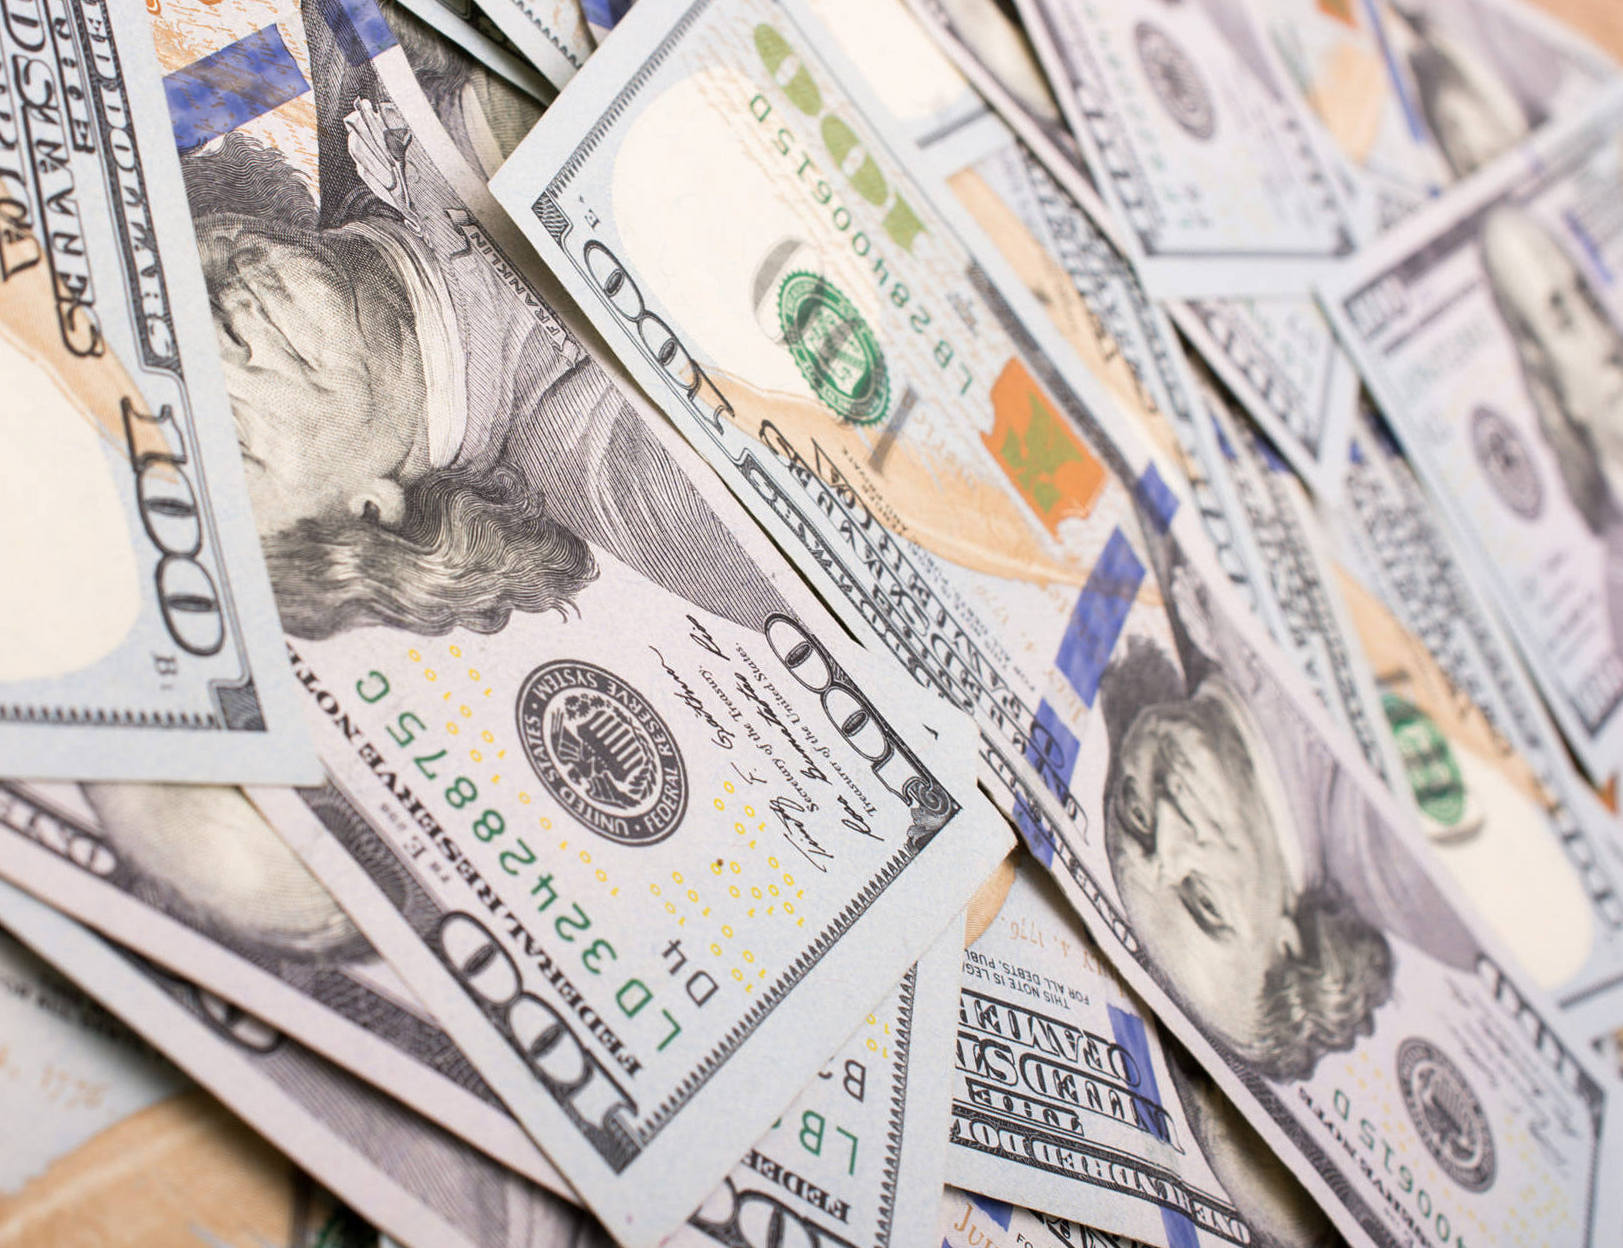 доллары фото доллар скачать фотография изображение фотографию США валюта курс обмен валюты форекс обои деньги бесплатно картинки